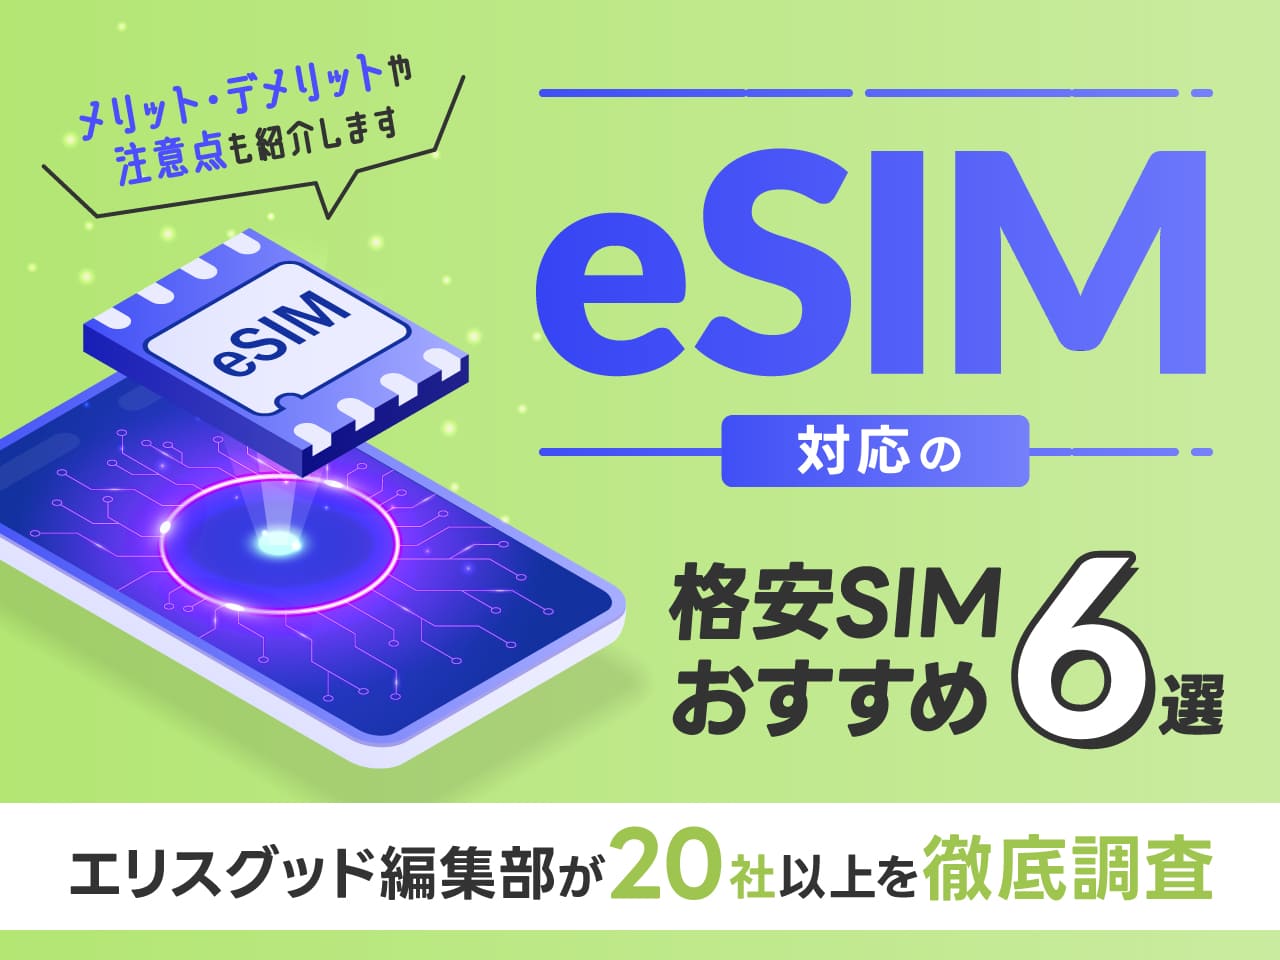 eSIM対応の格安SIMおすすめ6選 エリスグッド編集部が20社以上を徹底調査。メリット・デメリットや注意点も紹介します。